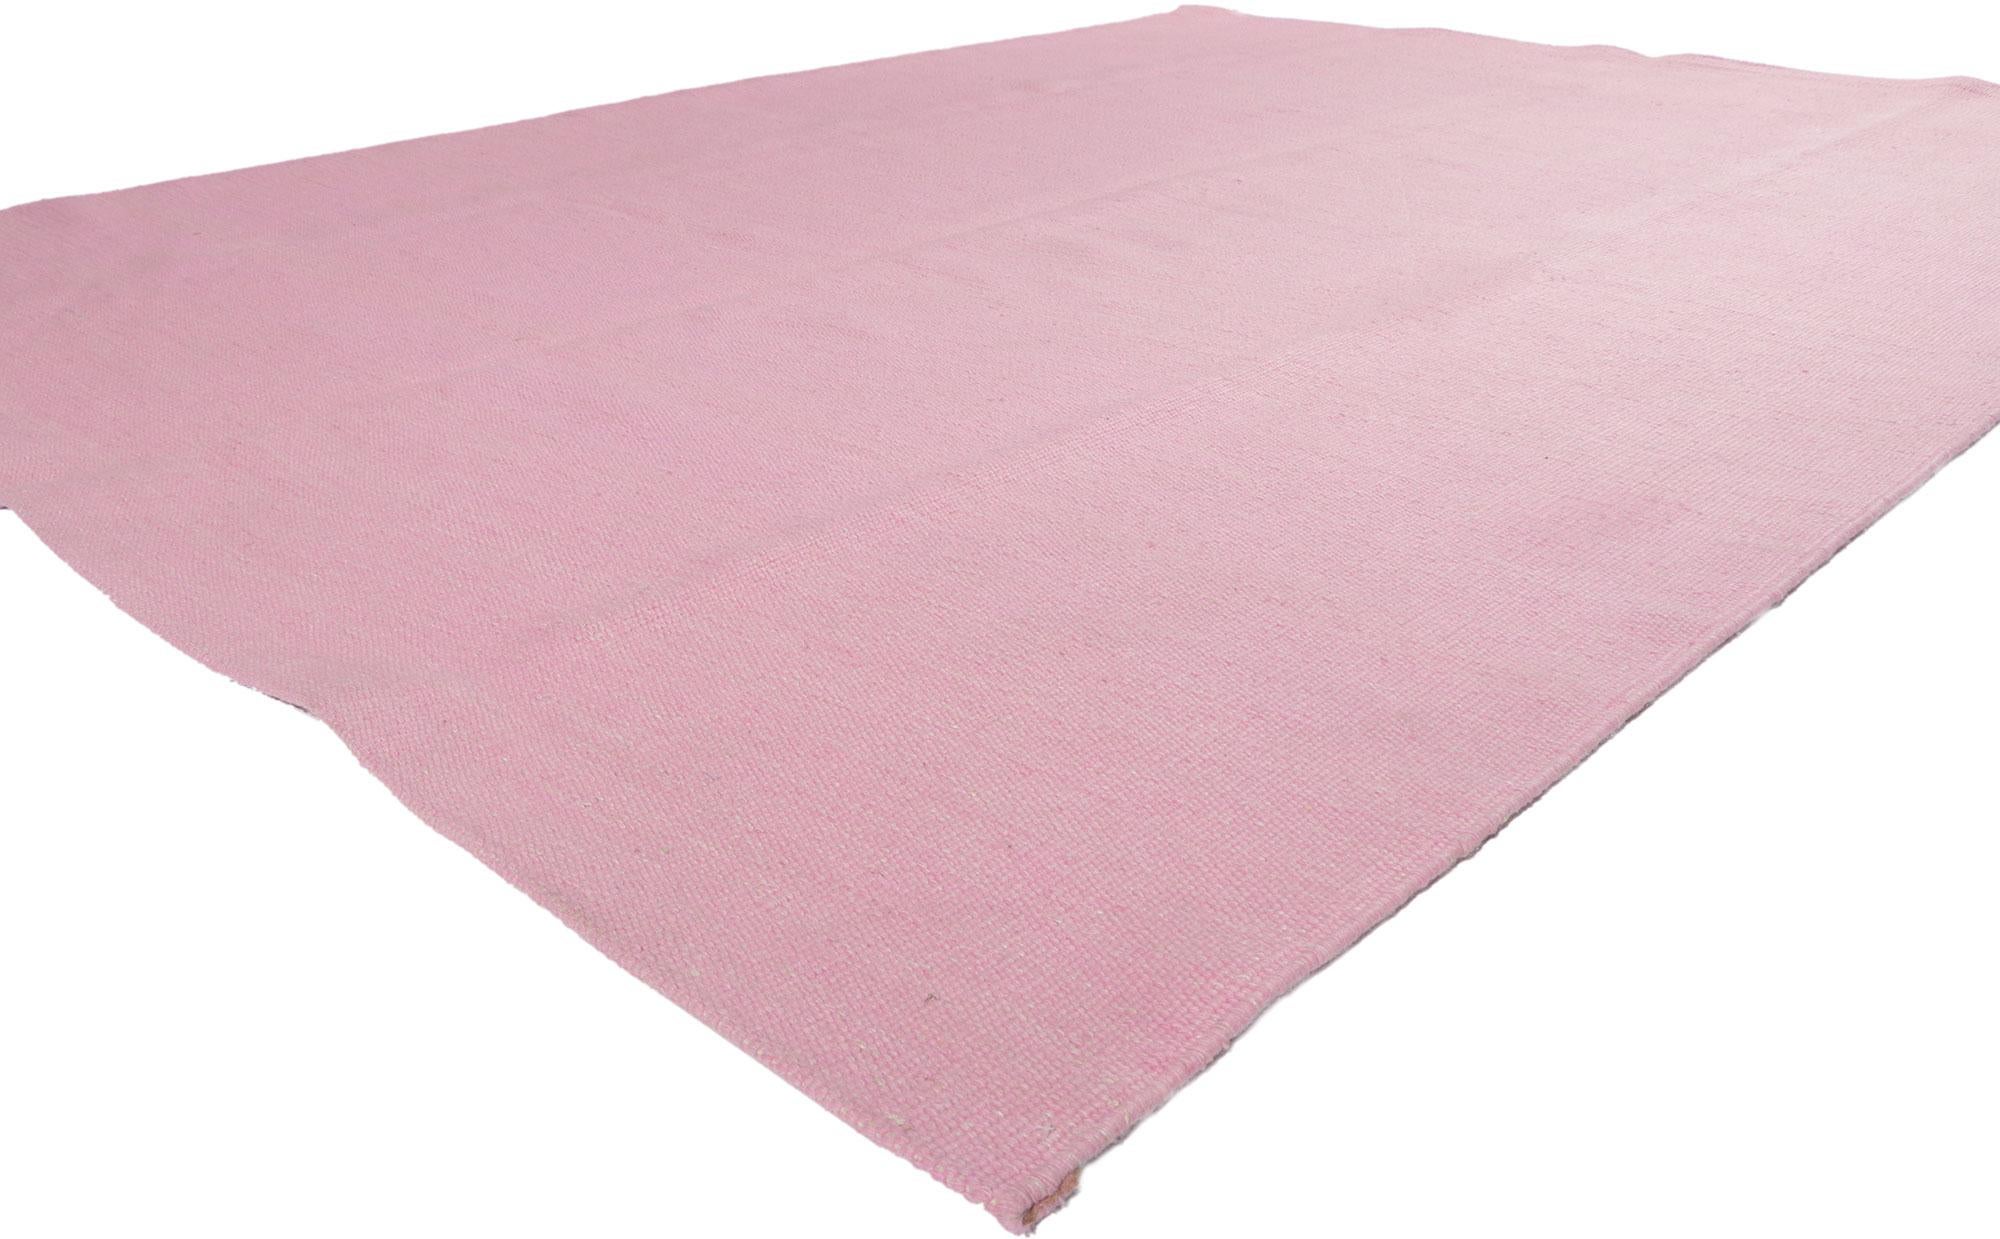 30686 Moderner schwedisch inspirierter rosa Kilim-Teppich, 08'08 x 11'05.
Dieser handgewebte, schwedisch inspirierte rosa Kilim-Teppich aus Wolle verkörpert auf wunderbare Weise die Schlichtheit des modernen skandinavischen Stils - von subtil bis